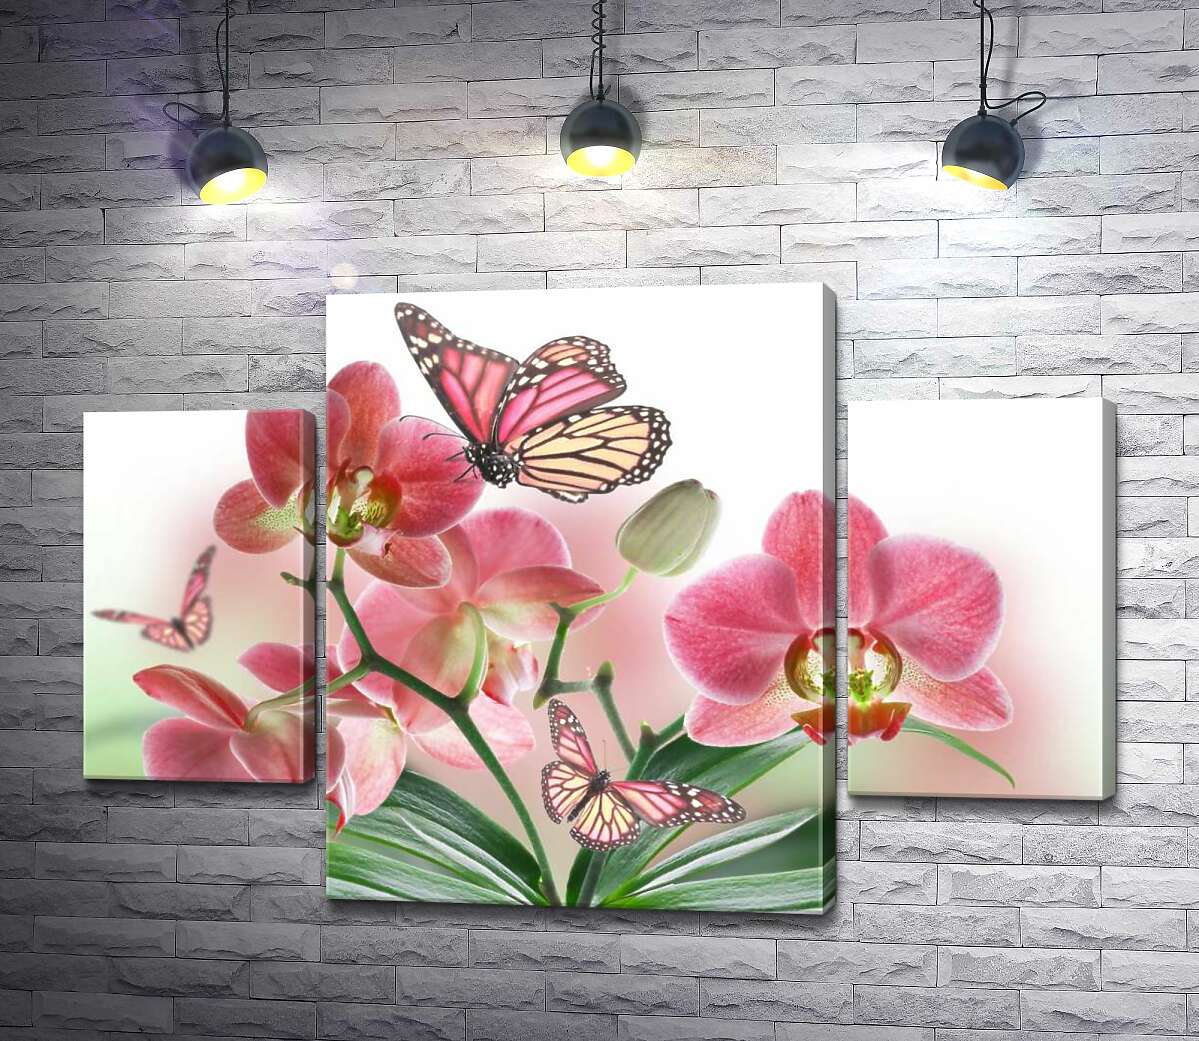 

Модульная картина ArtPoster Бабочки среди орхидей: розовая магия природы 100x69 см Модуль №7